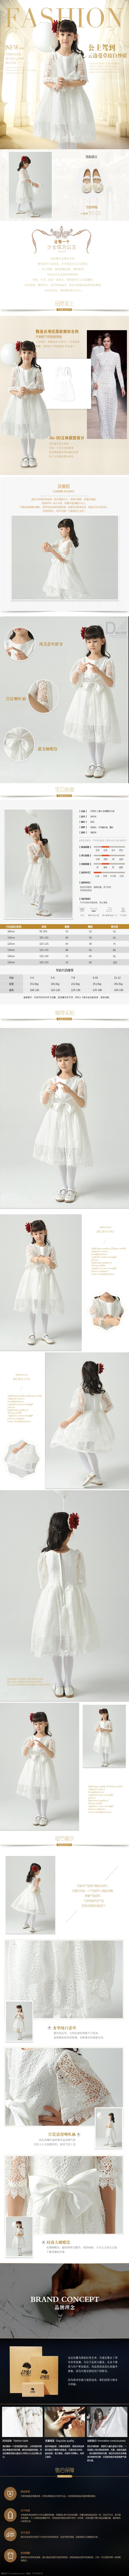 女童 礼服 详情 页 淘宝素材 淘宝设计 淘宝模板下载 白色